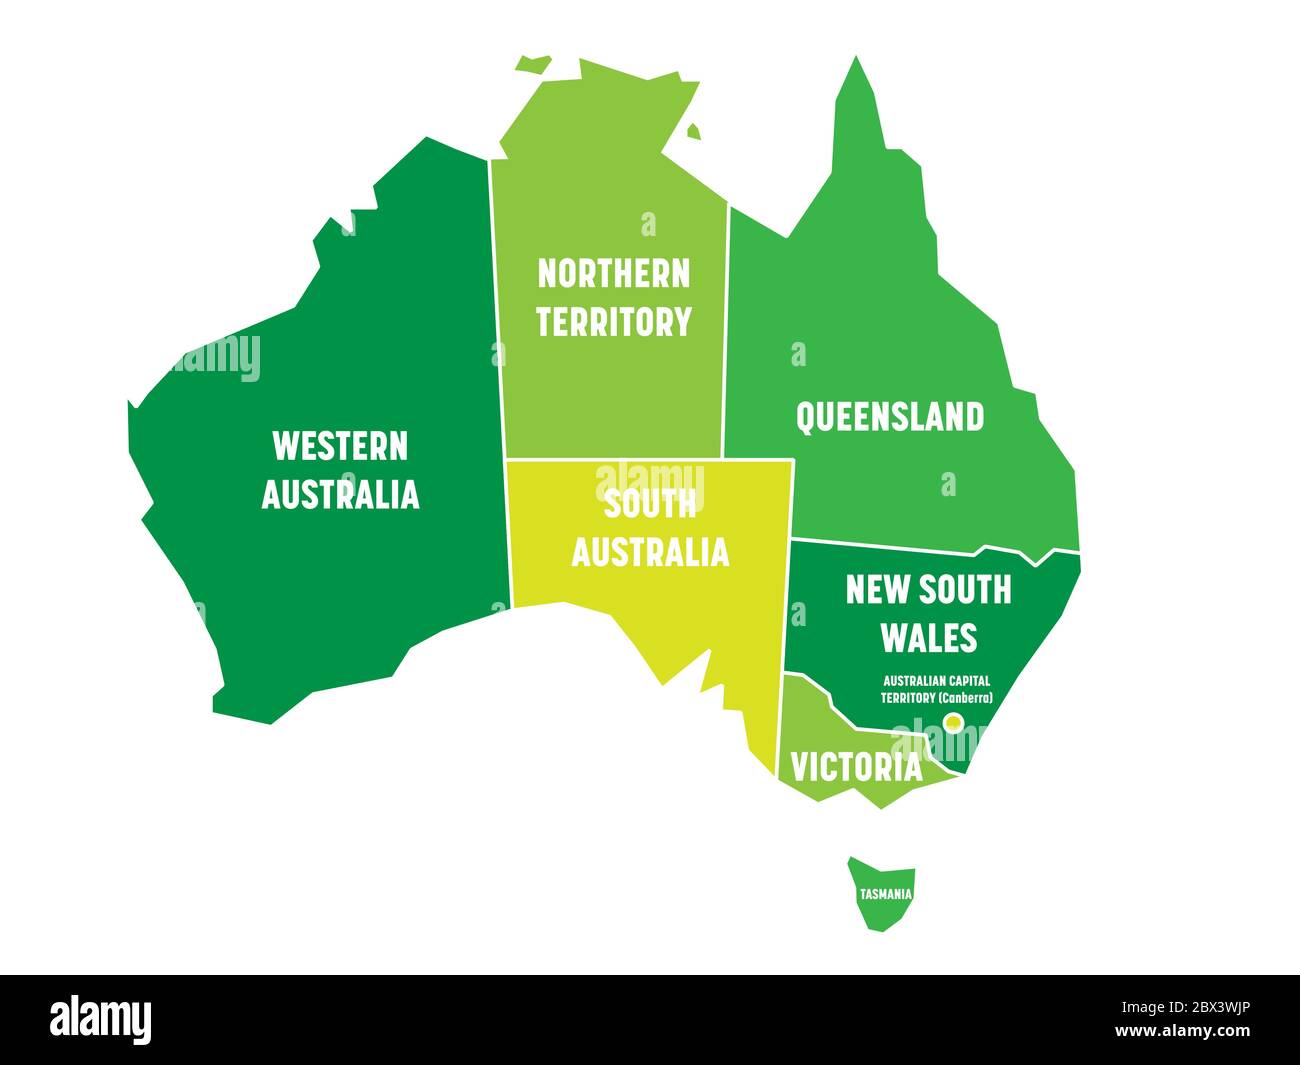 Mappa semplificata dell'Australia divisa in stati e territori. Mappa verde piatta con bordi bianchi ed etichette bianche. Illustrazione vettoriale. Illustrazione Vettoriale